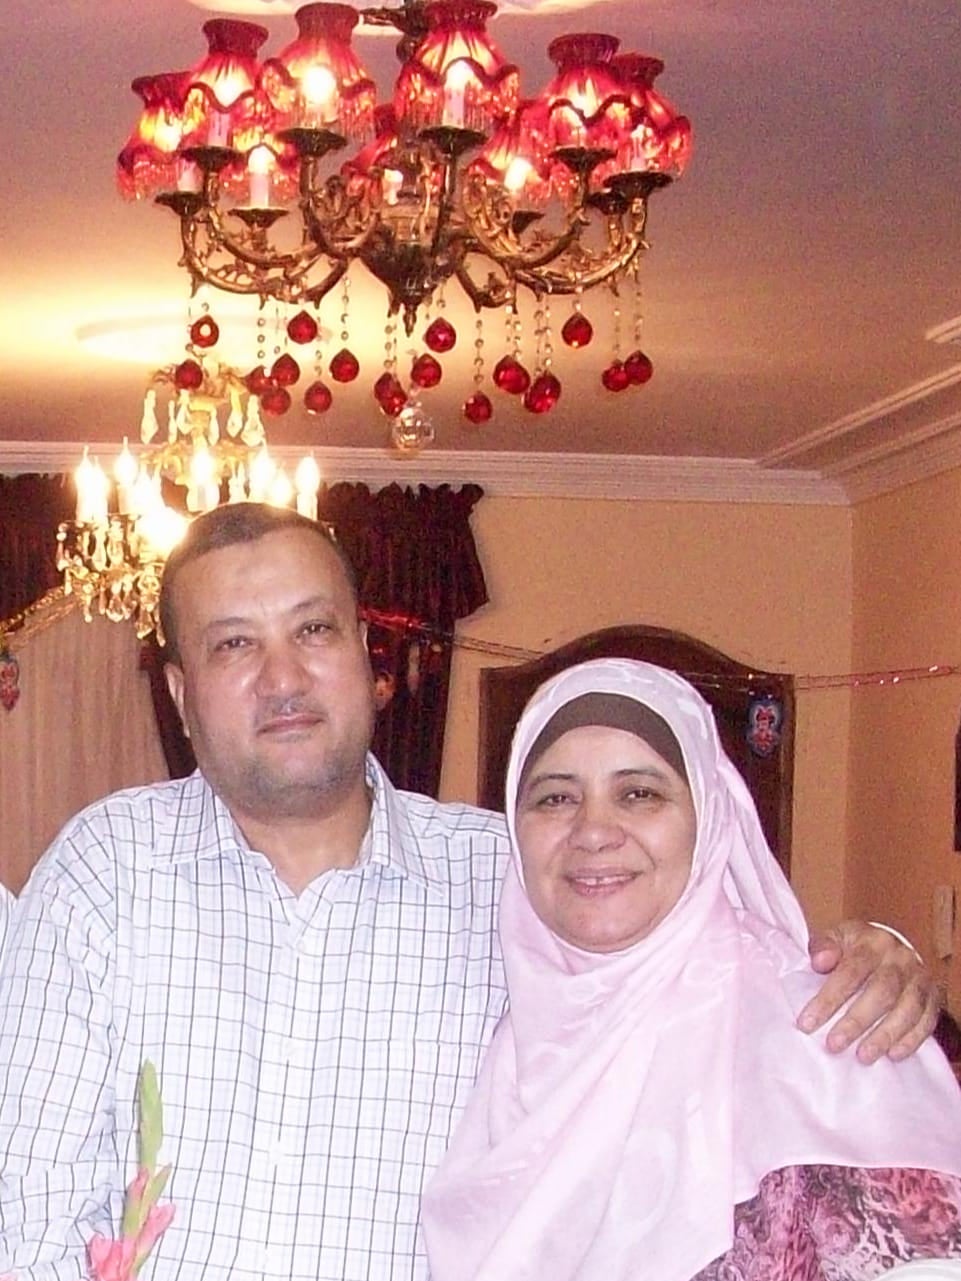 Ahmed Abdelnabi Mahmoud and Raia Abdallah at their home in Dallas, Texas.